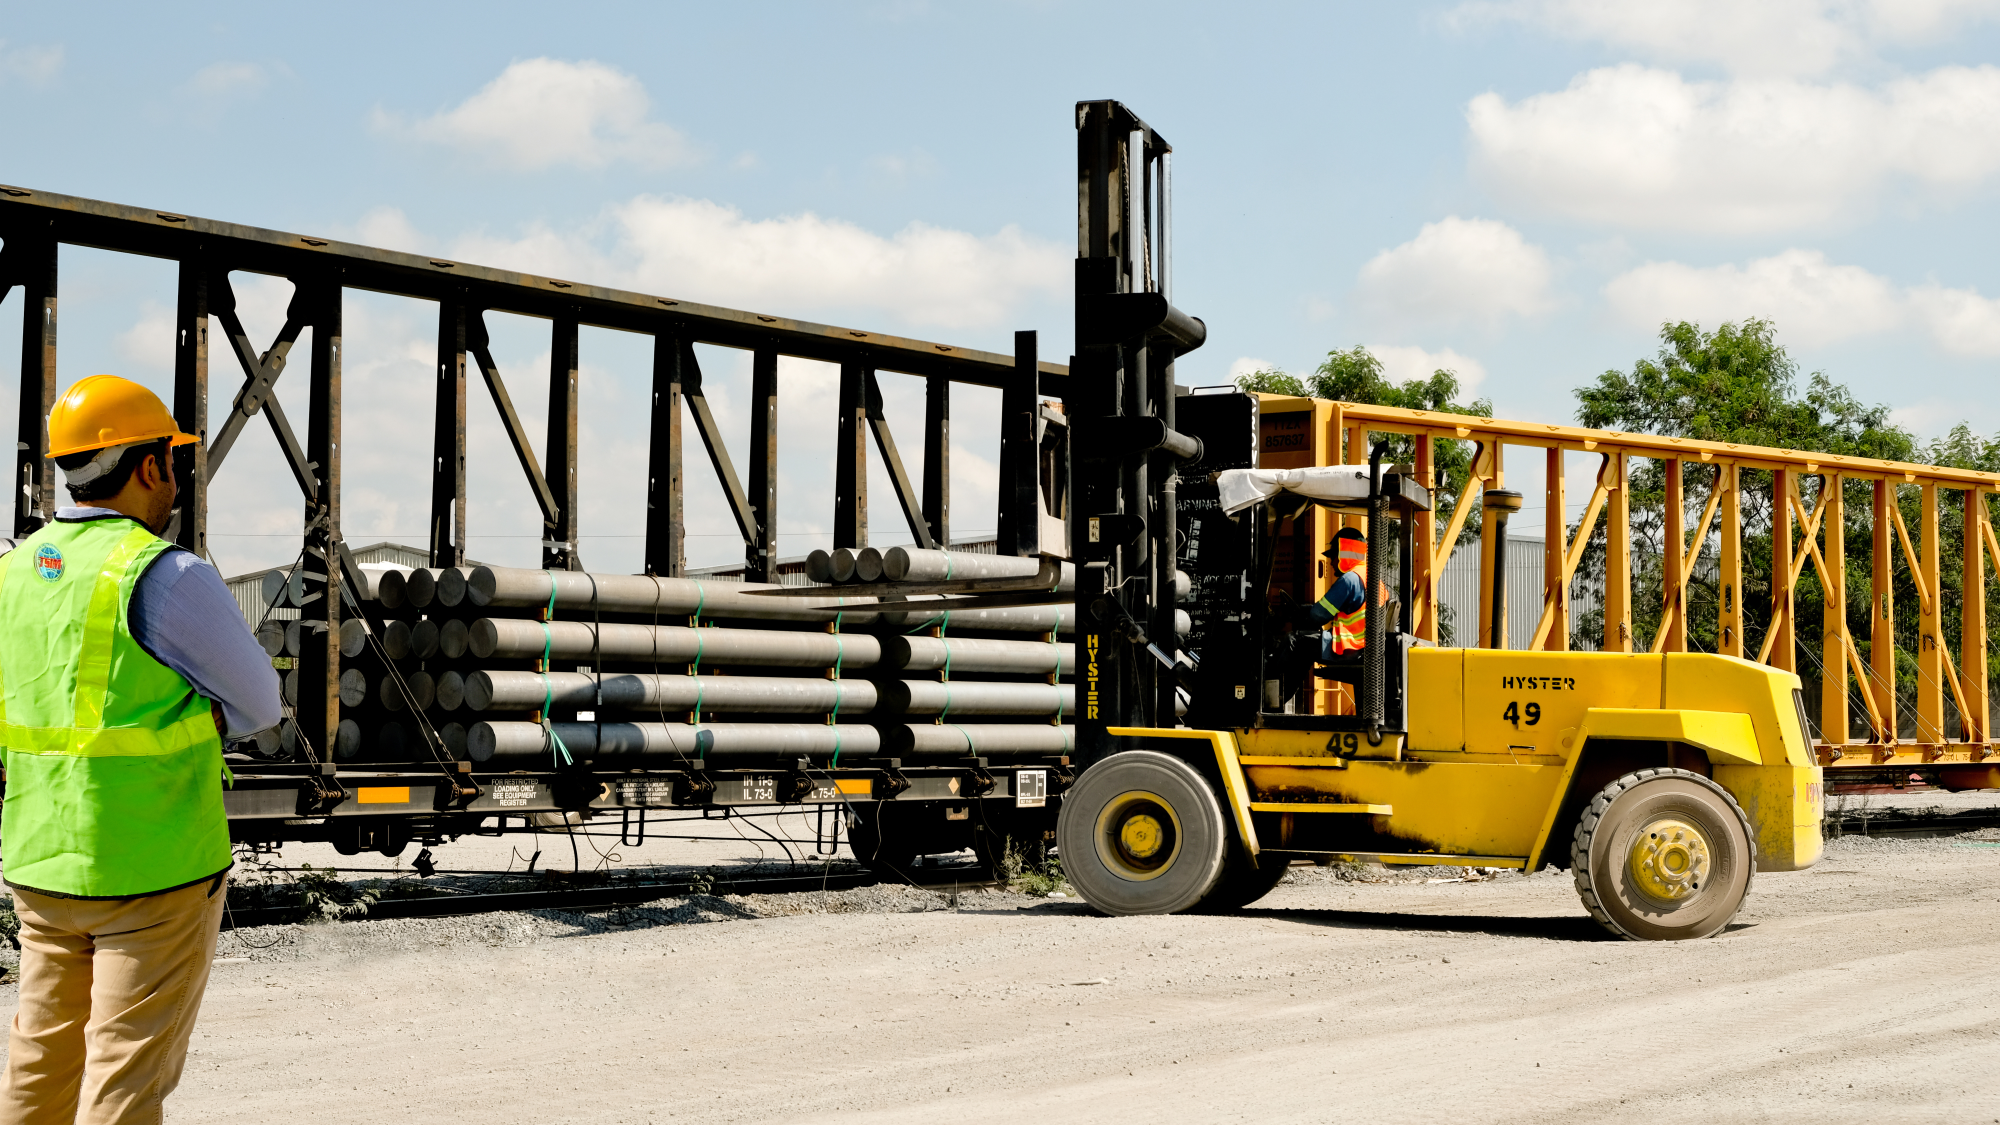 Grúas hidráulicas para maniobrar material pesado con capacidades de hasta 90 toneladas desde o hacia unidades ferroviarias, tractocamiones o bodegas